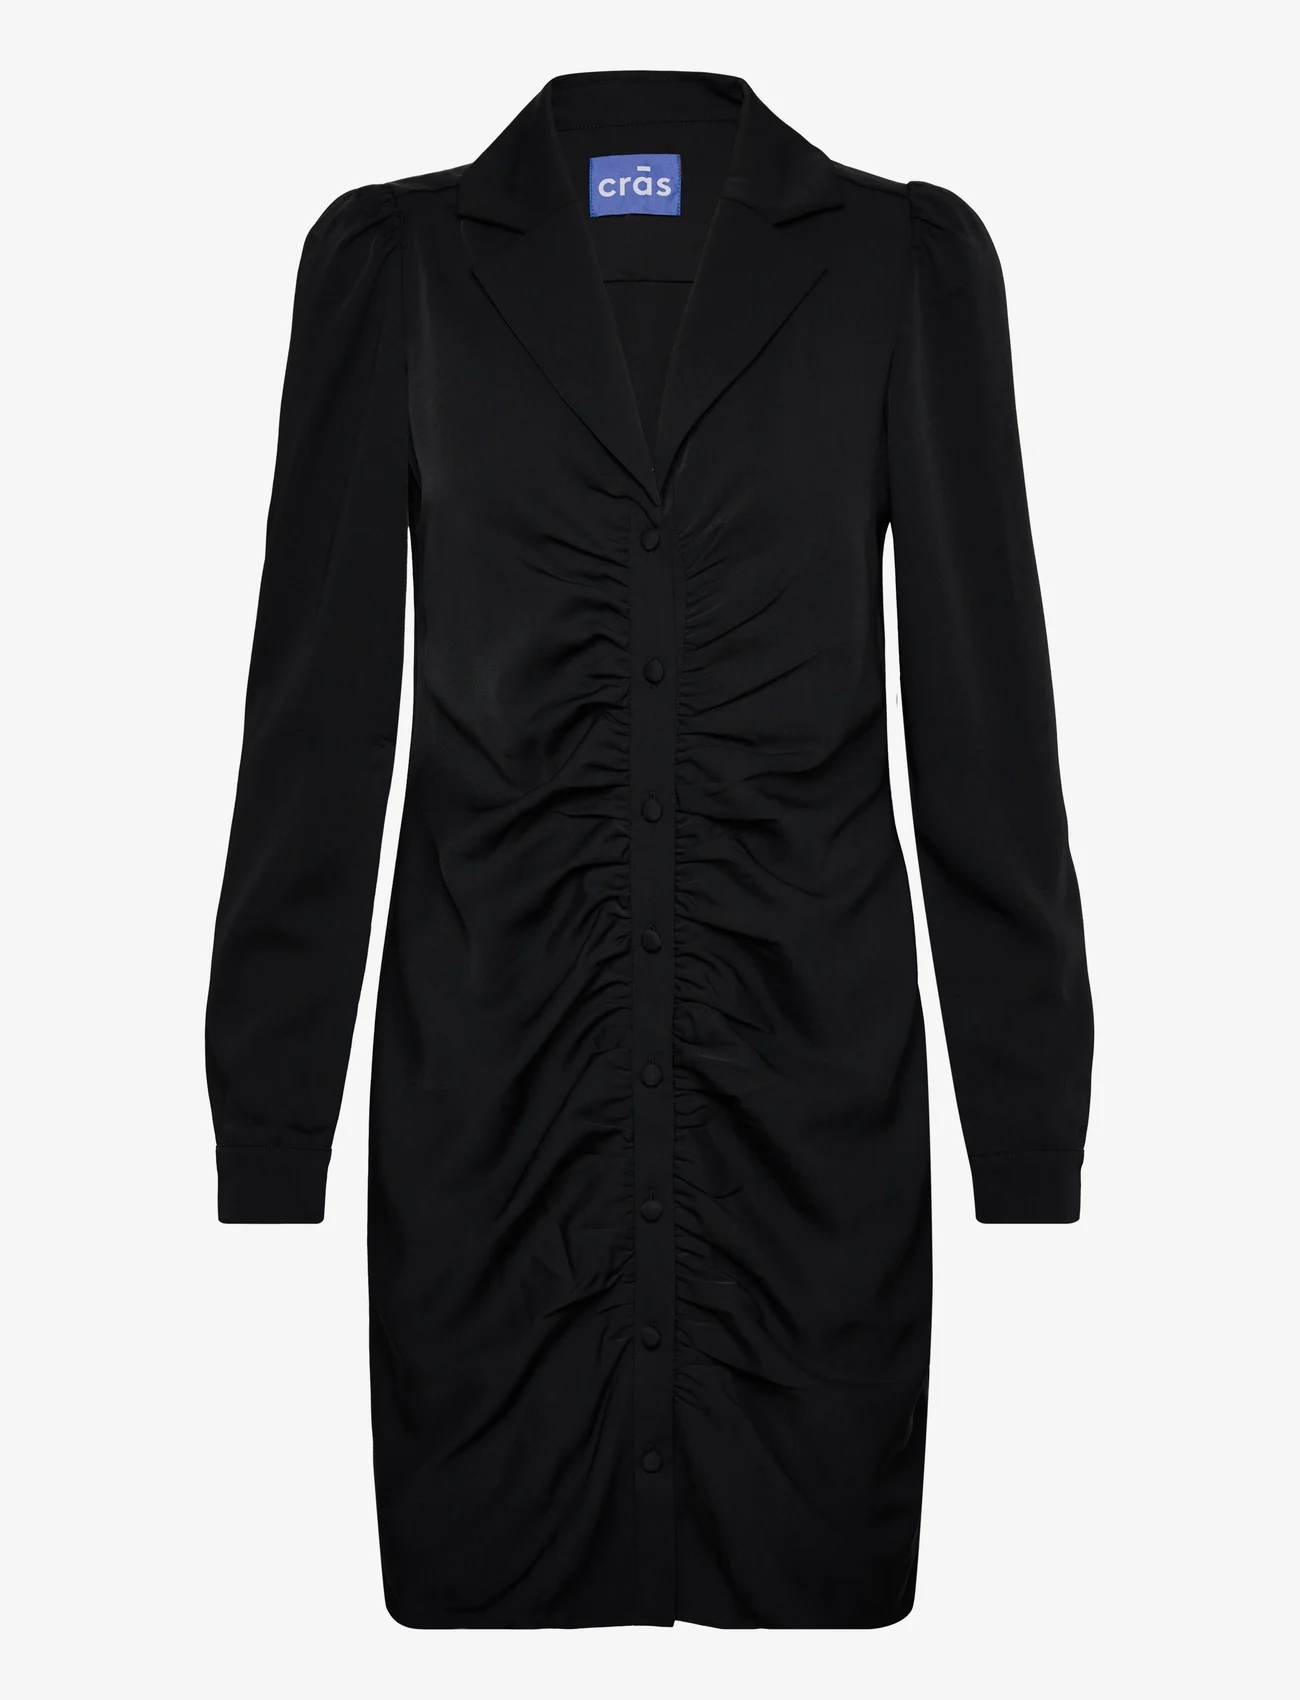 Cras - Nancycras Dress - odzież imprezowa w cenach outletowych - black - 0